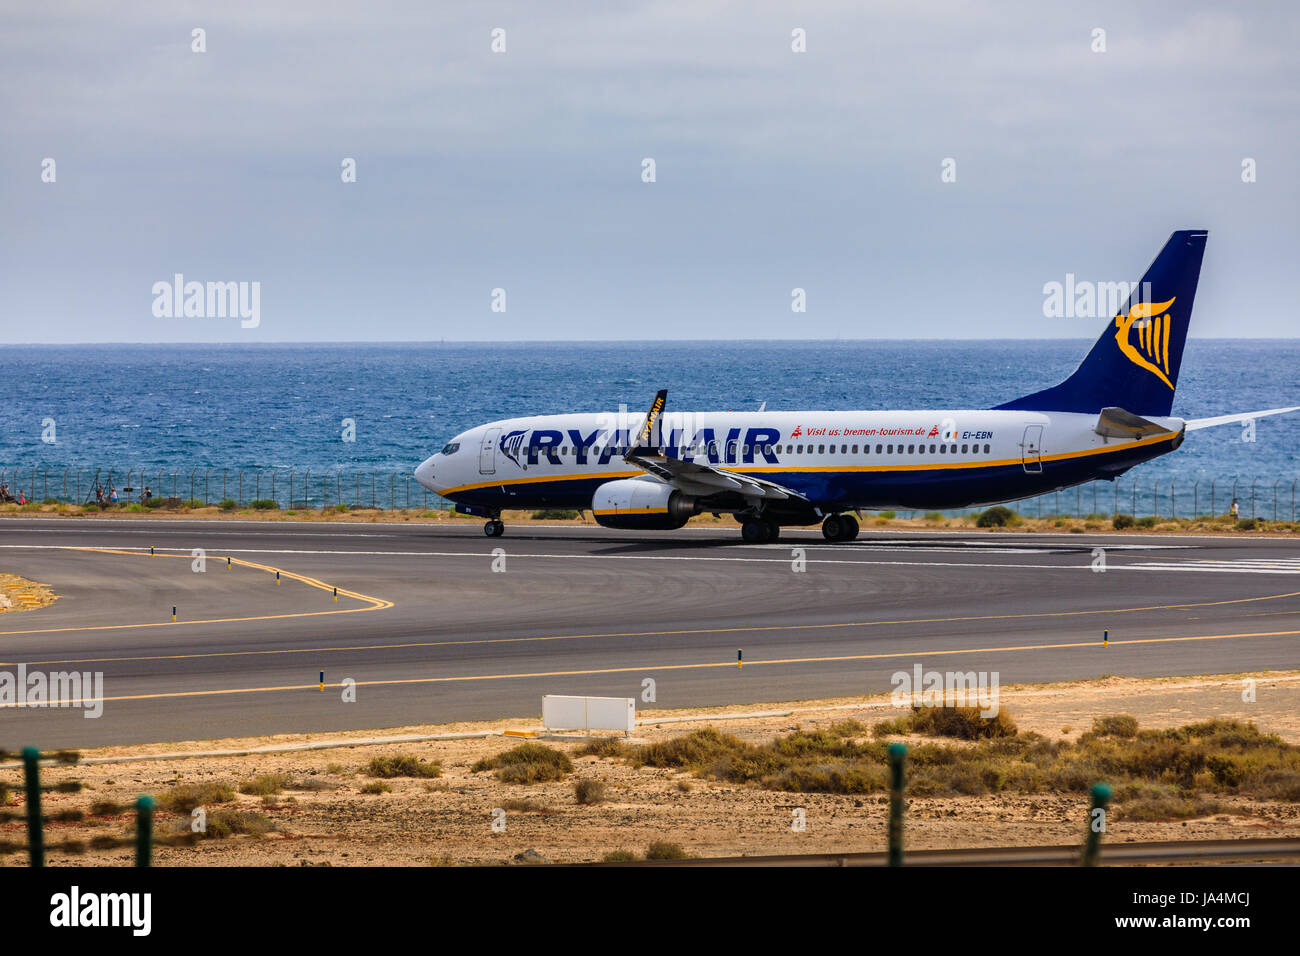 ARECIFE, Spagna - Aprile 15 2017: Boeing 737-800 di Ryanair con la registrazione EI-EBN pronto al decollo a Lanzarote Airport Foto Stock